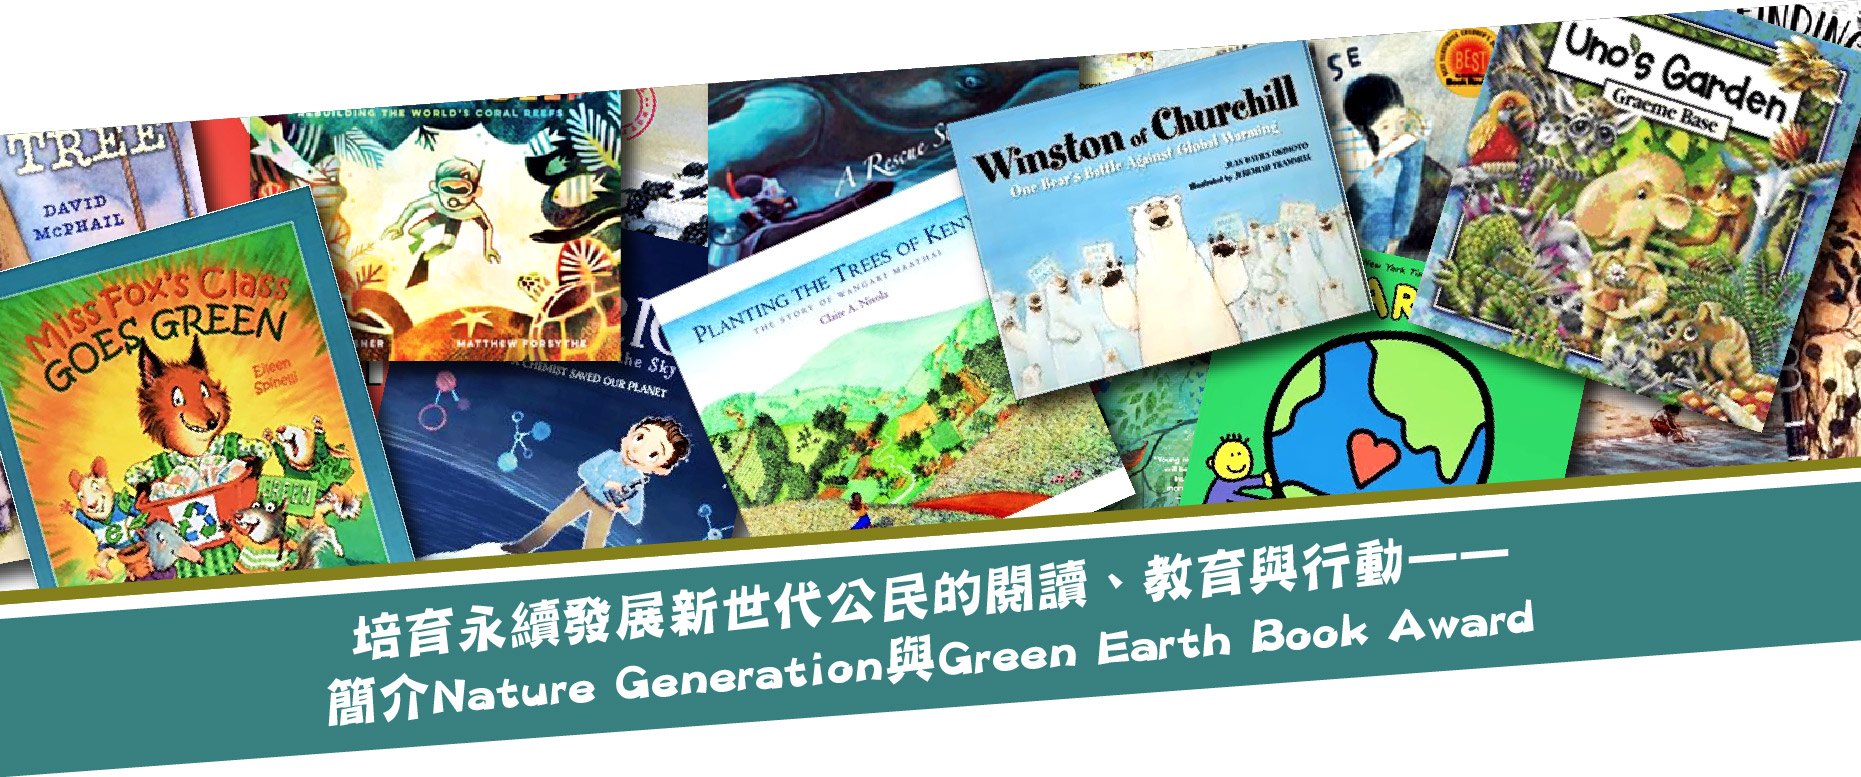 培育永續發展新世代公民的閱讀、教育與行動——簡介Nature Generation與Green Earth Book Award